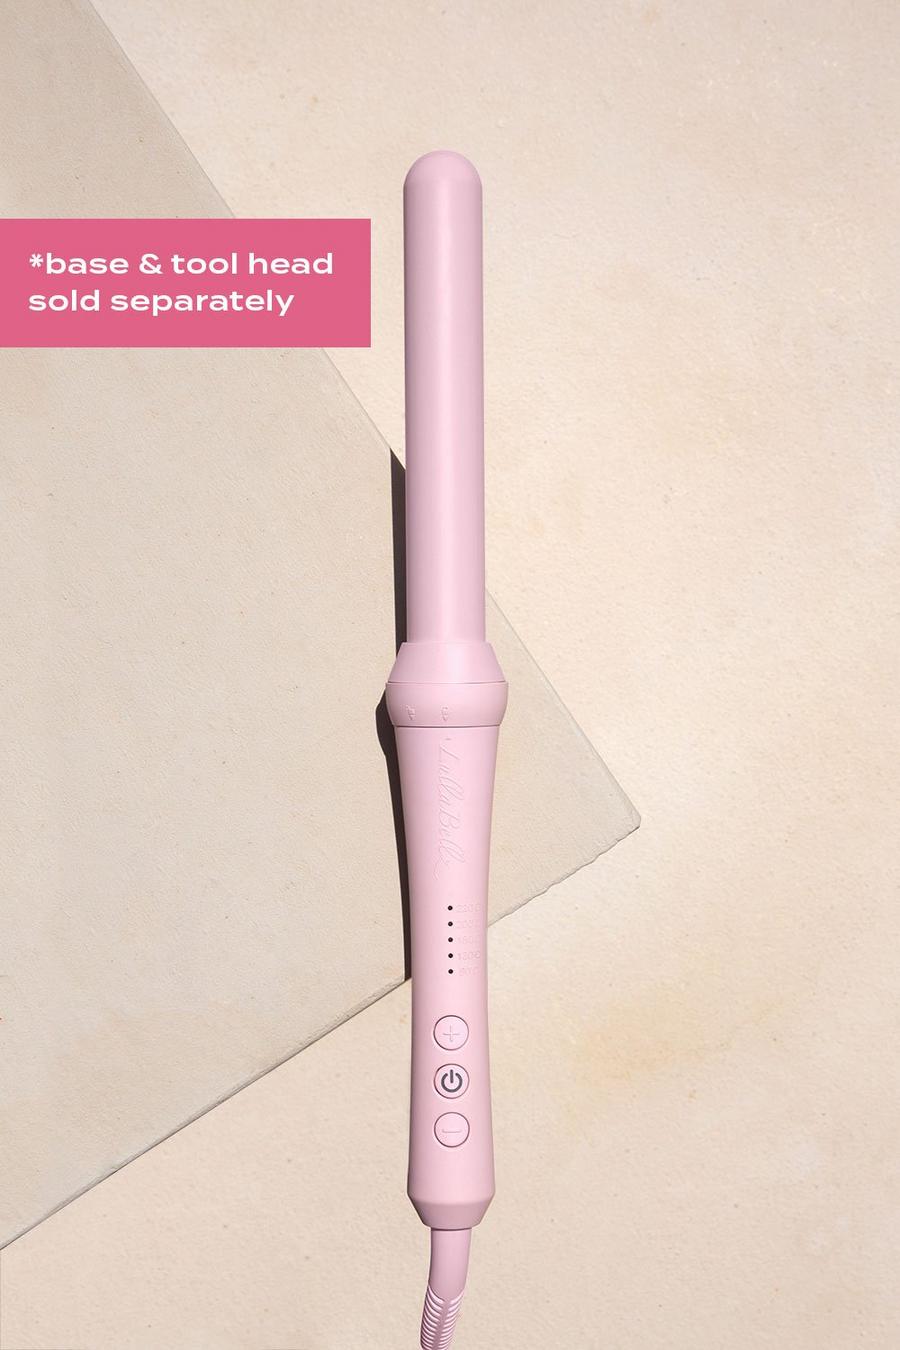 ורוד בייבי rosa מכשיר לעיצוב תלתלים It Curl Wand של Lullabellz Hair Tools